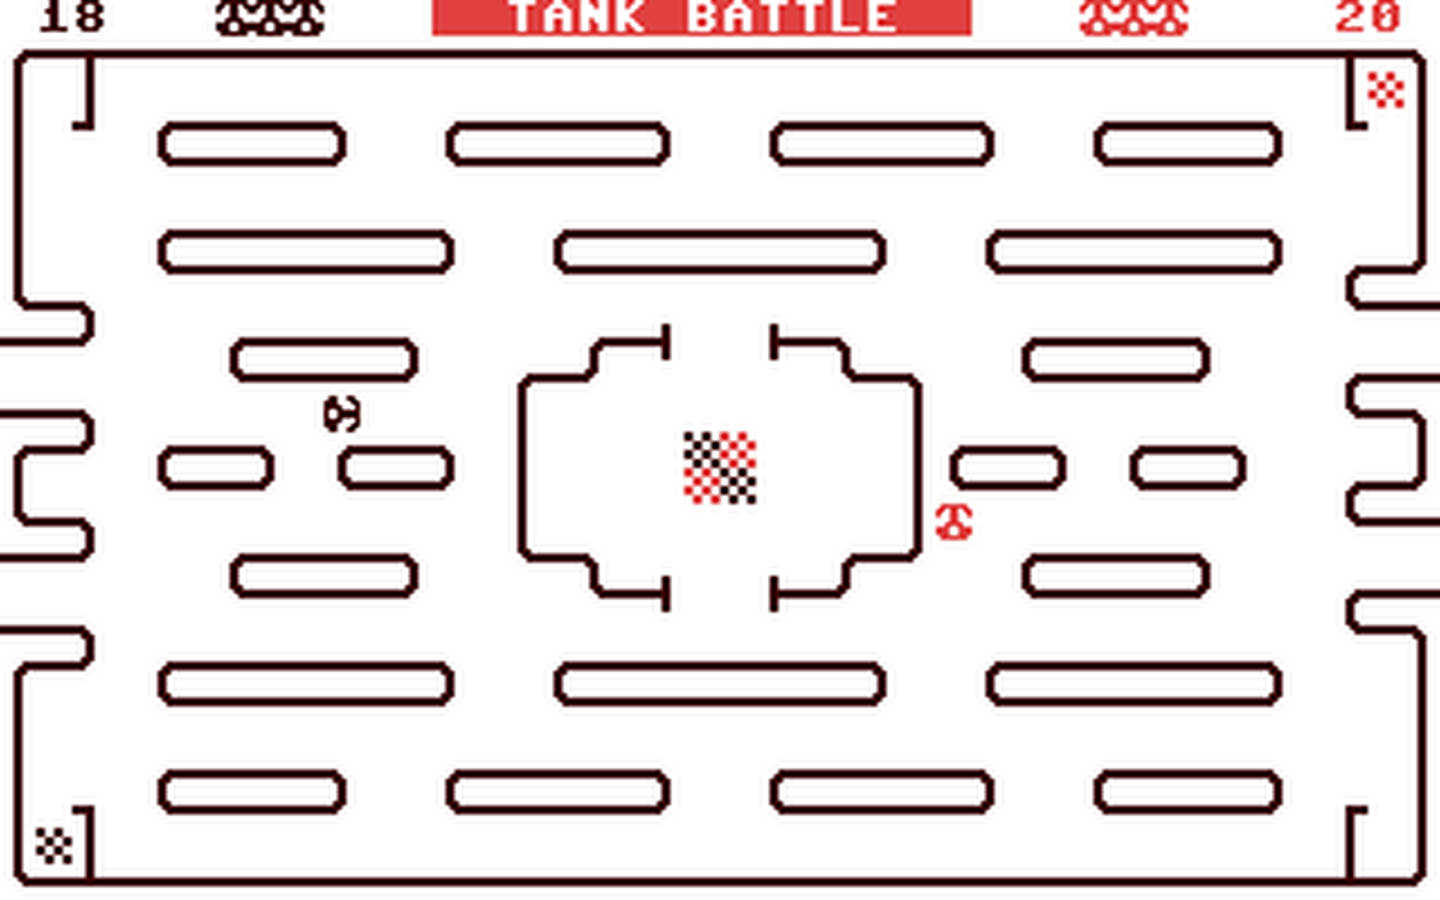 C64 GameBase Tank_Battle Alpha_Software_Ltd. 1986